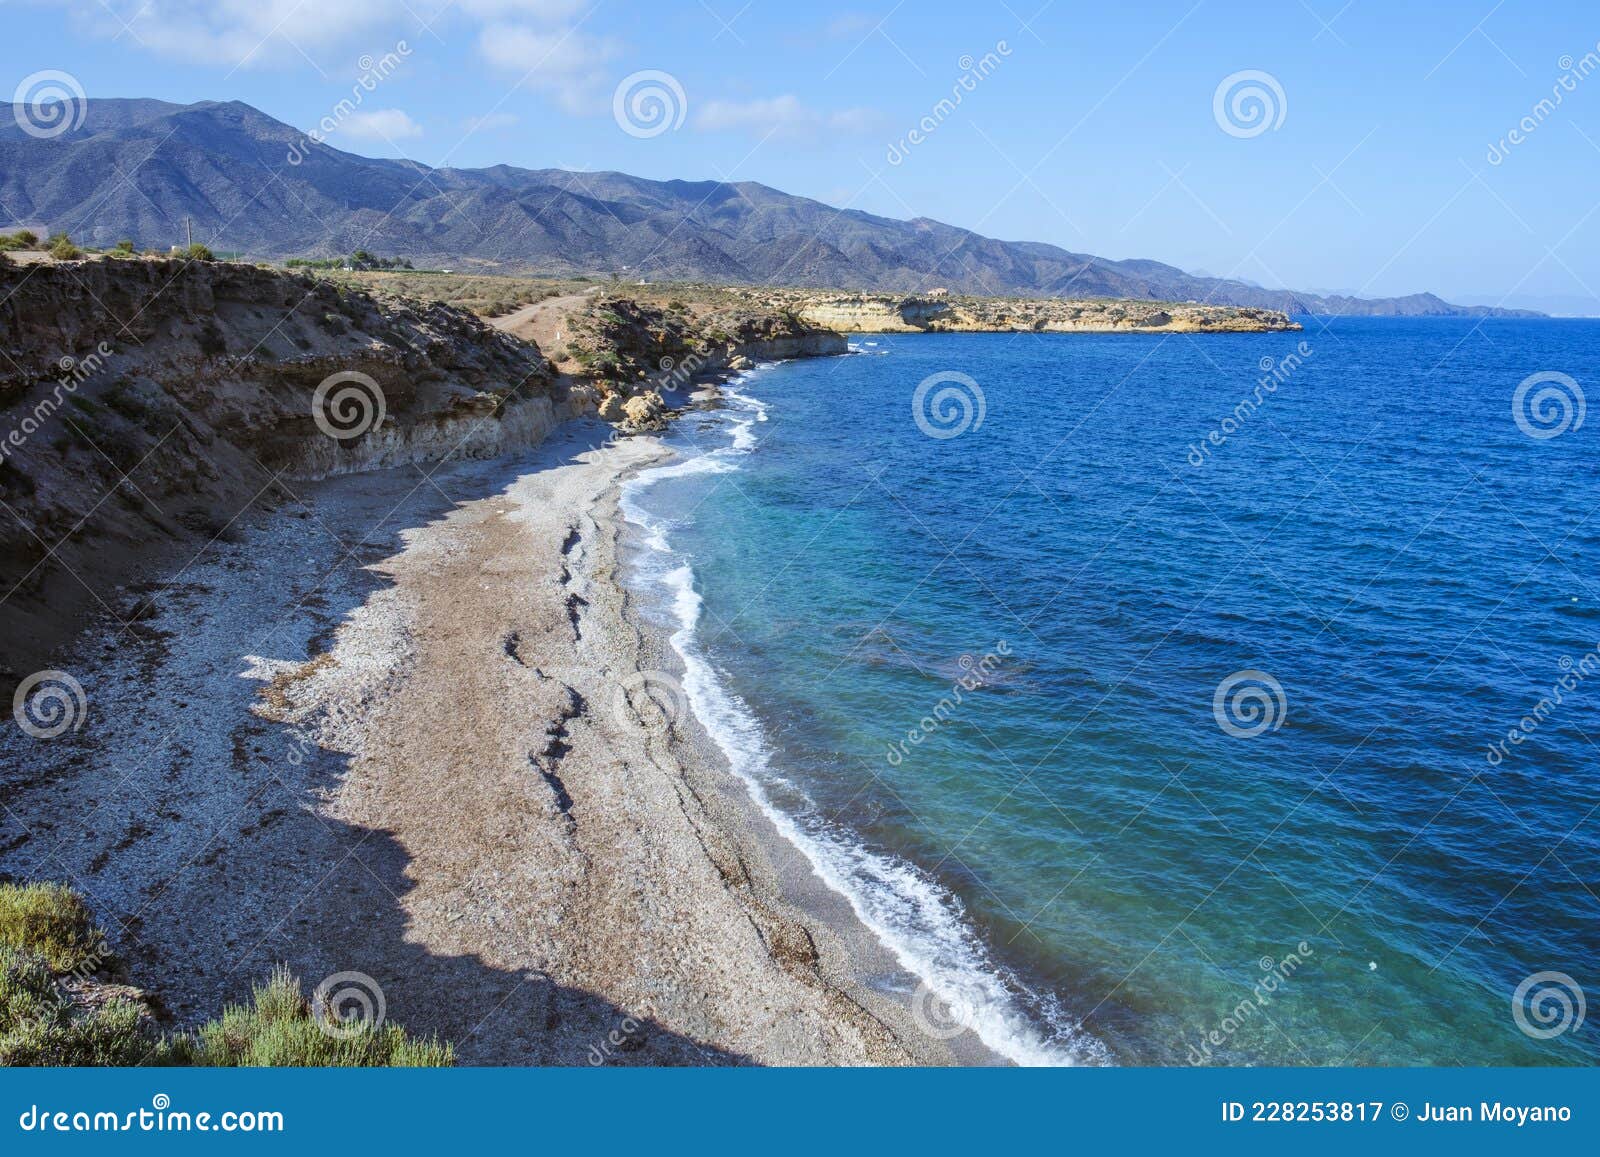 playa larga beach in lorca, spain